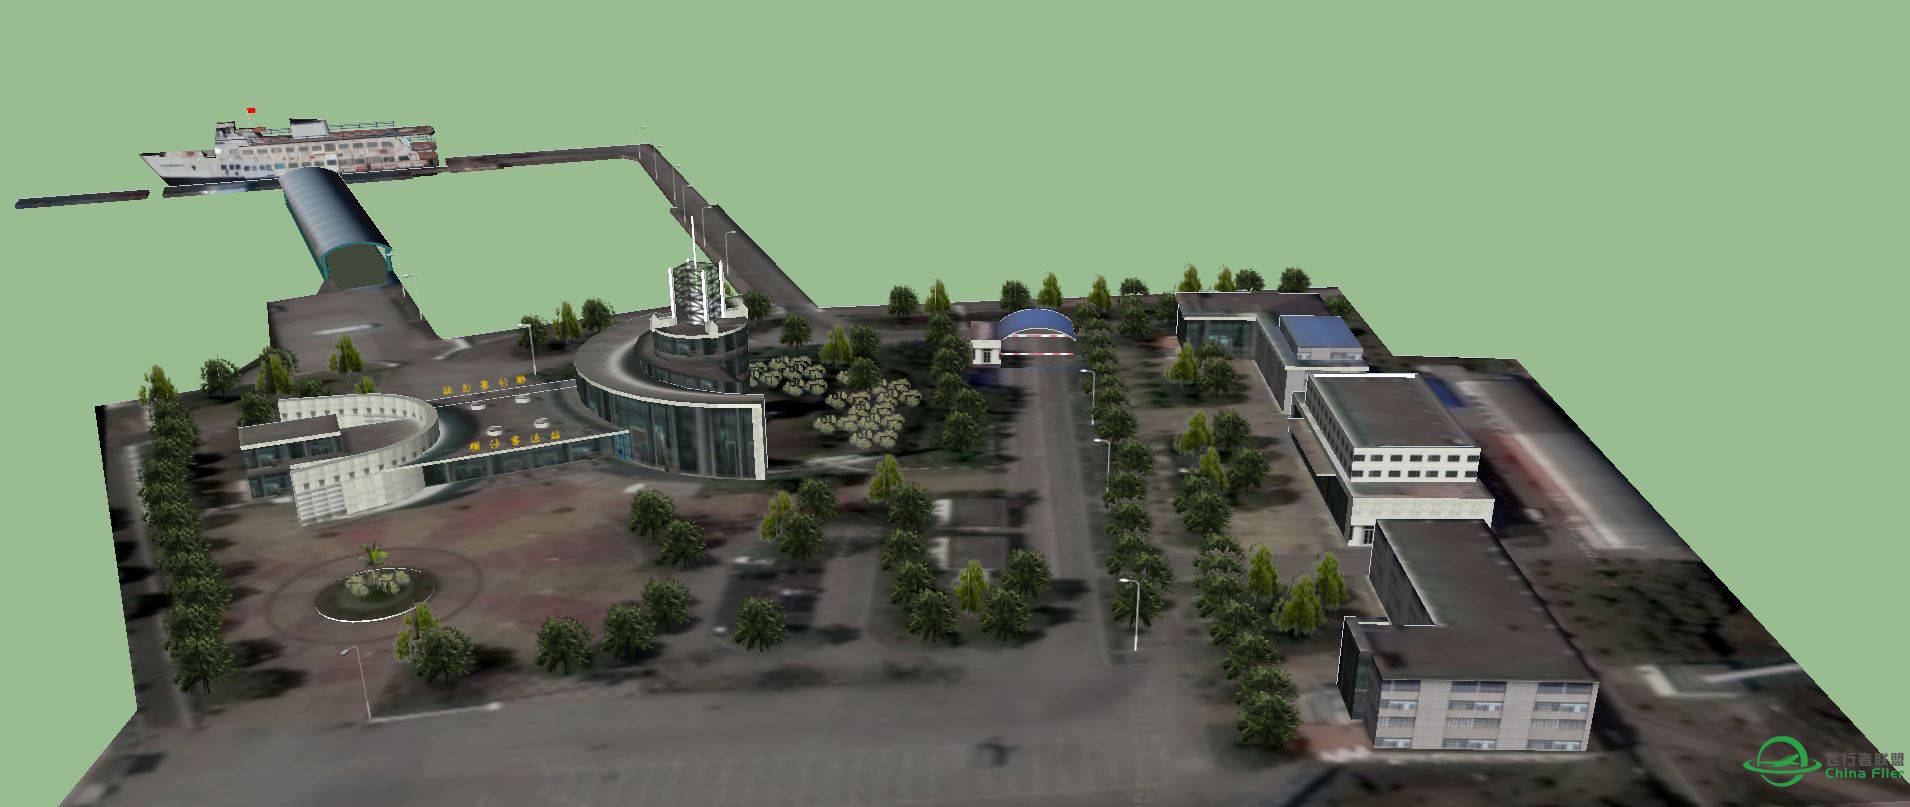 横沙岛地景的横沙客运码头建模完成-5923 